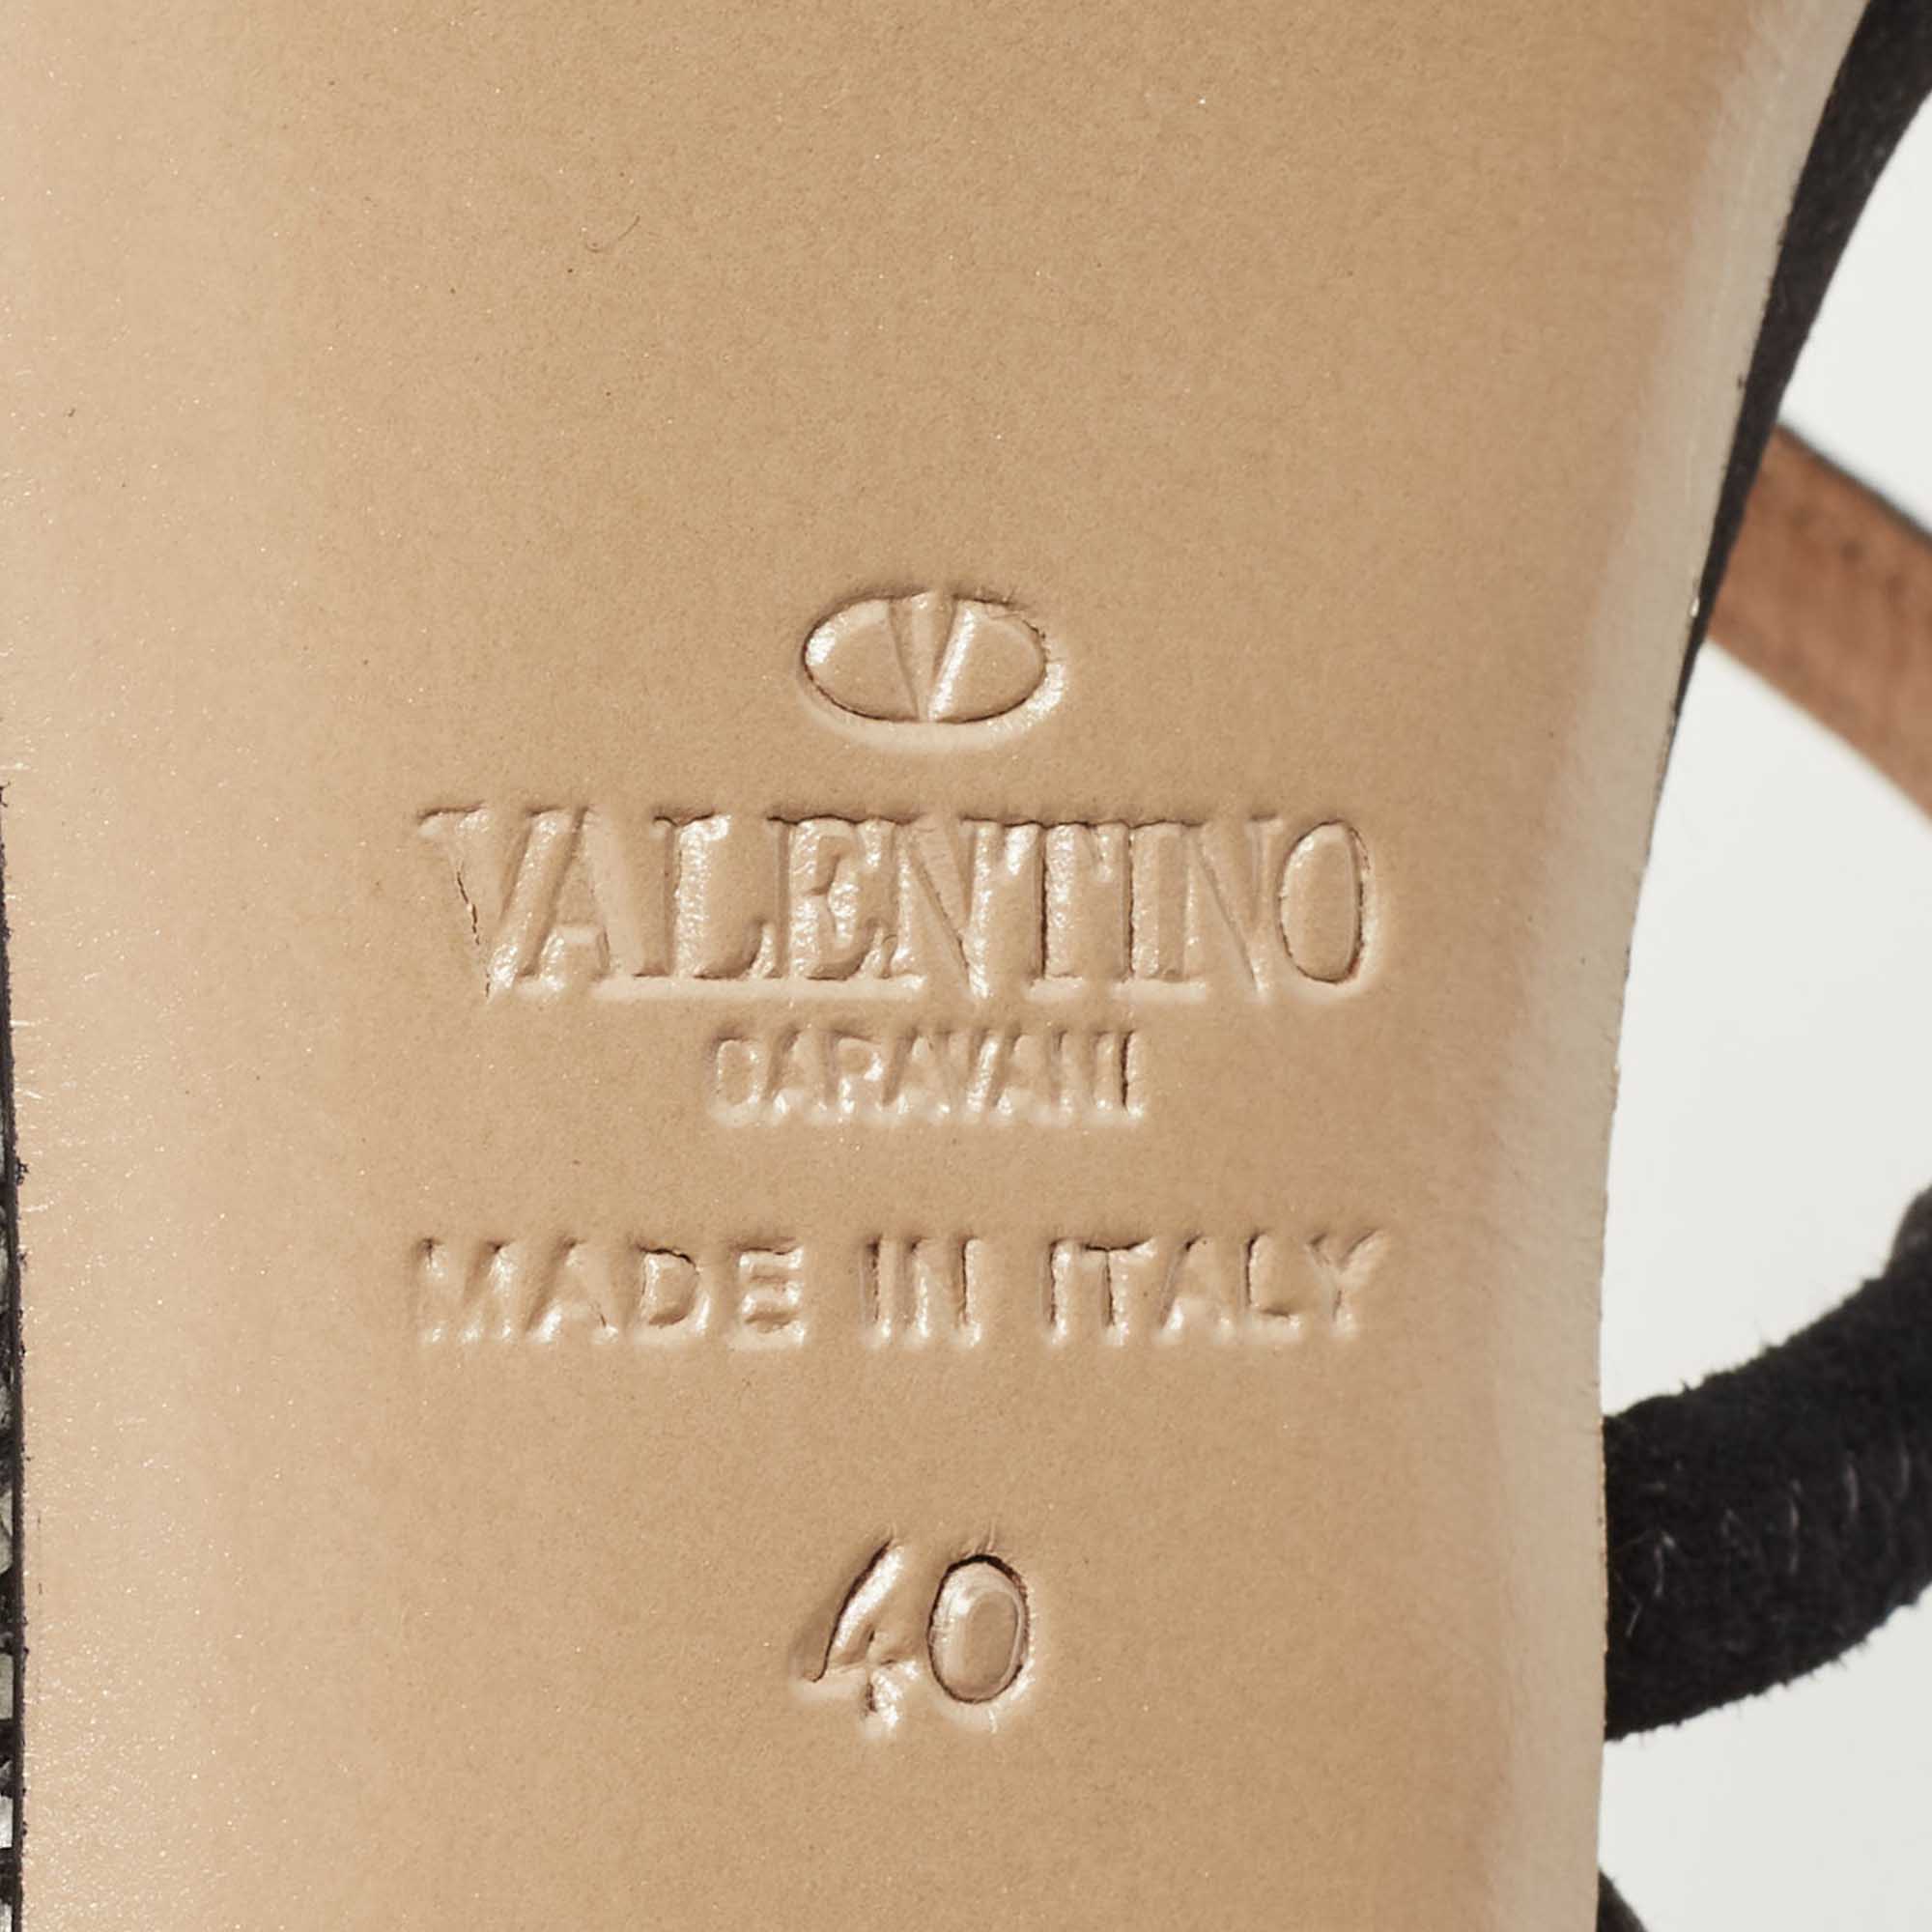 Valentino Black Satin Crystal Embellished Slingback Platform Pumps Size 40